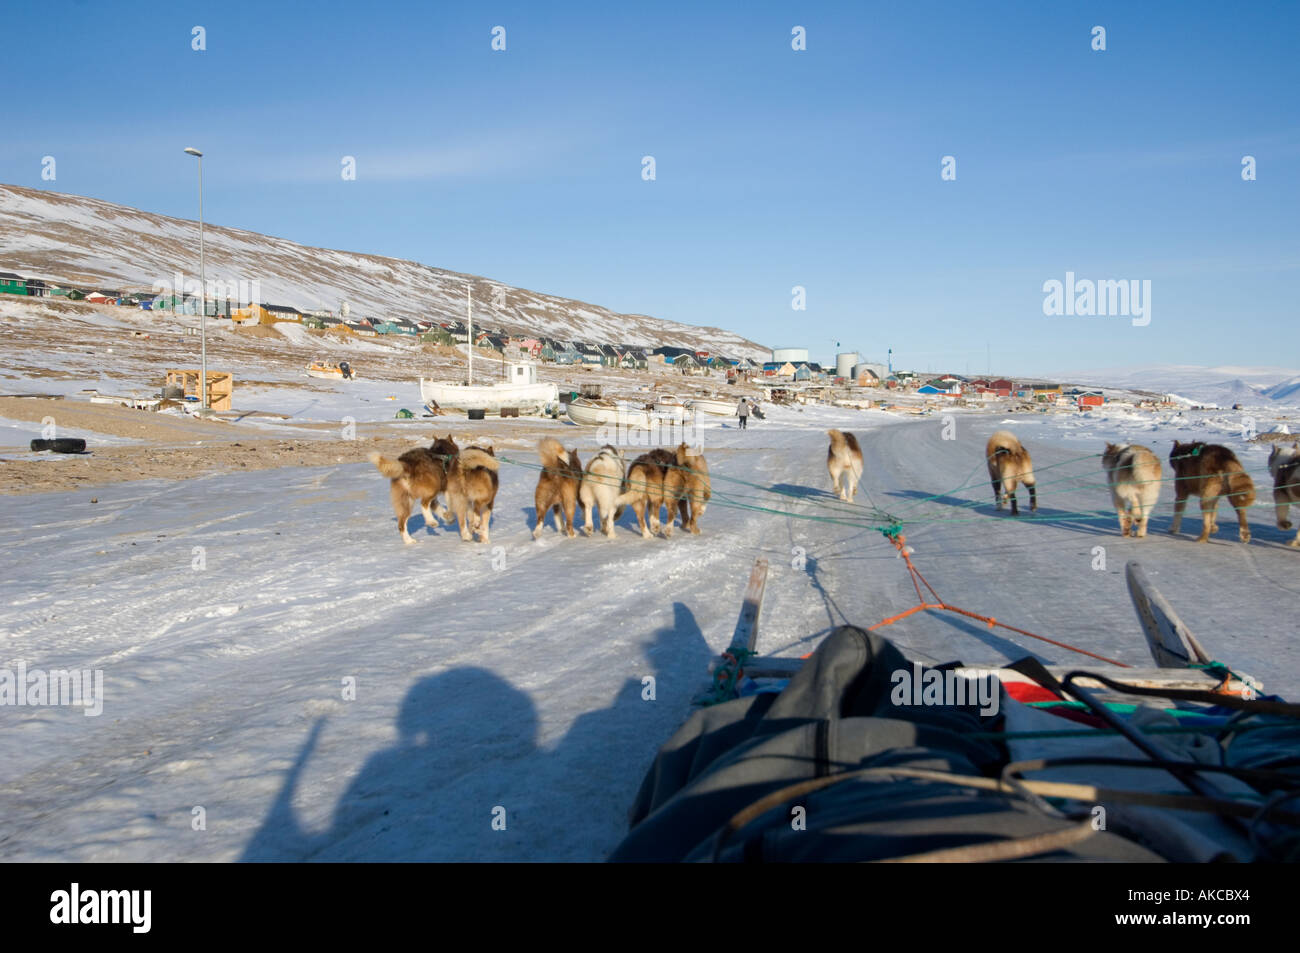 Qaanaaq Groenland Avril 2006 De retour de voyage de chasse au phoque en traîneaux à chiens dans la ville de Qaanaaq. Banque D'Images